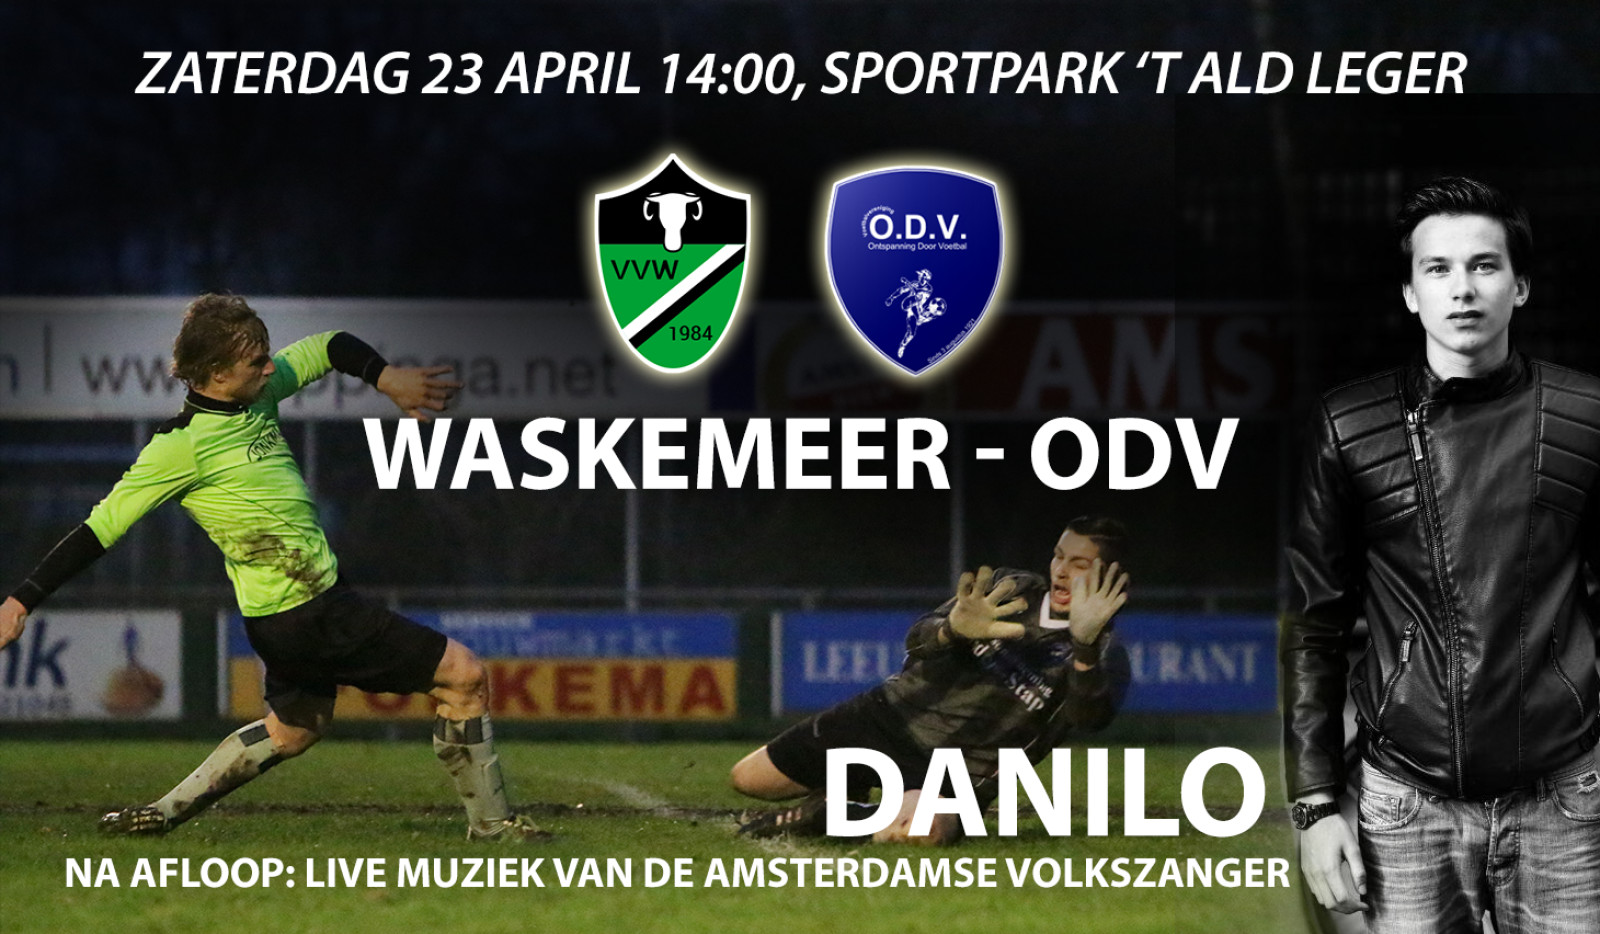 Derby Waskemeer - ODV met na afloop live muziek van Danilo!